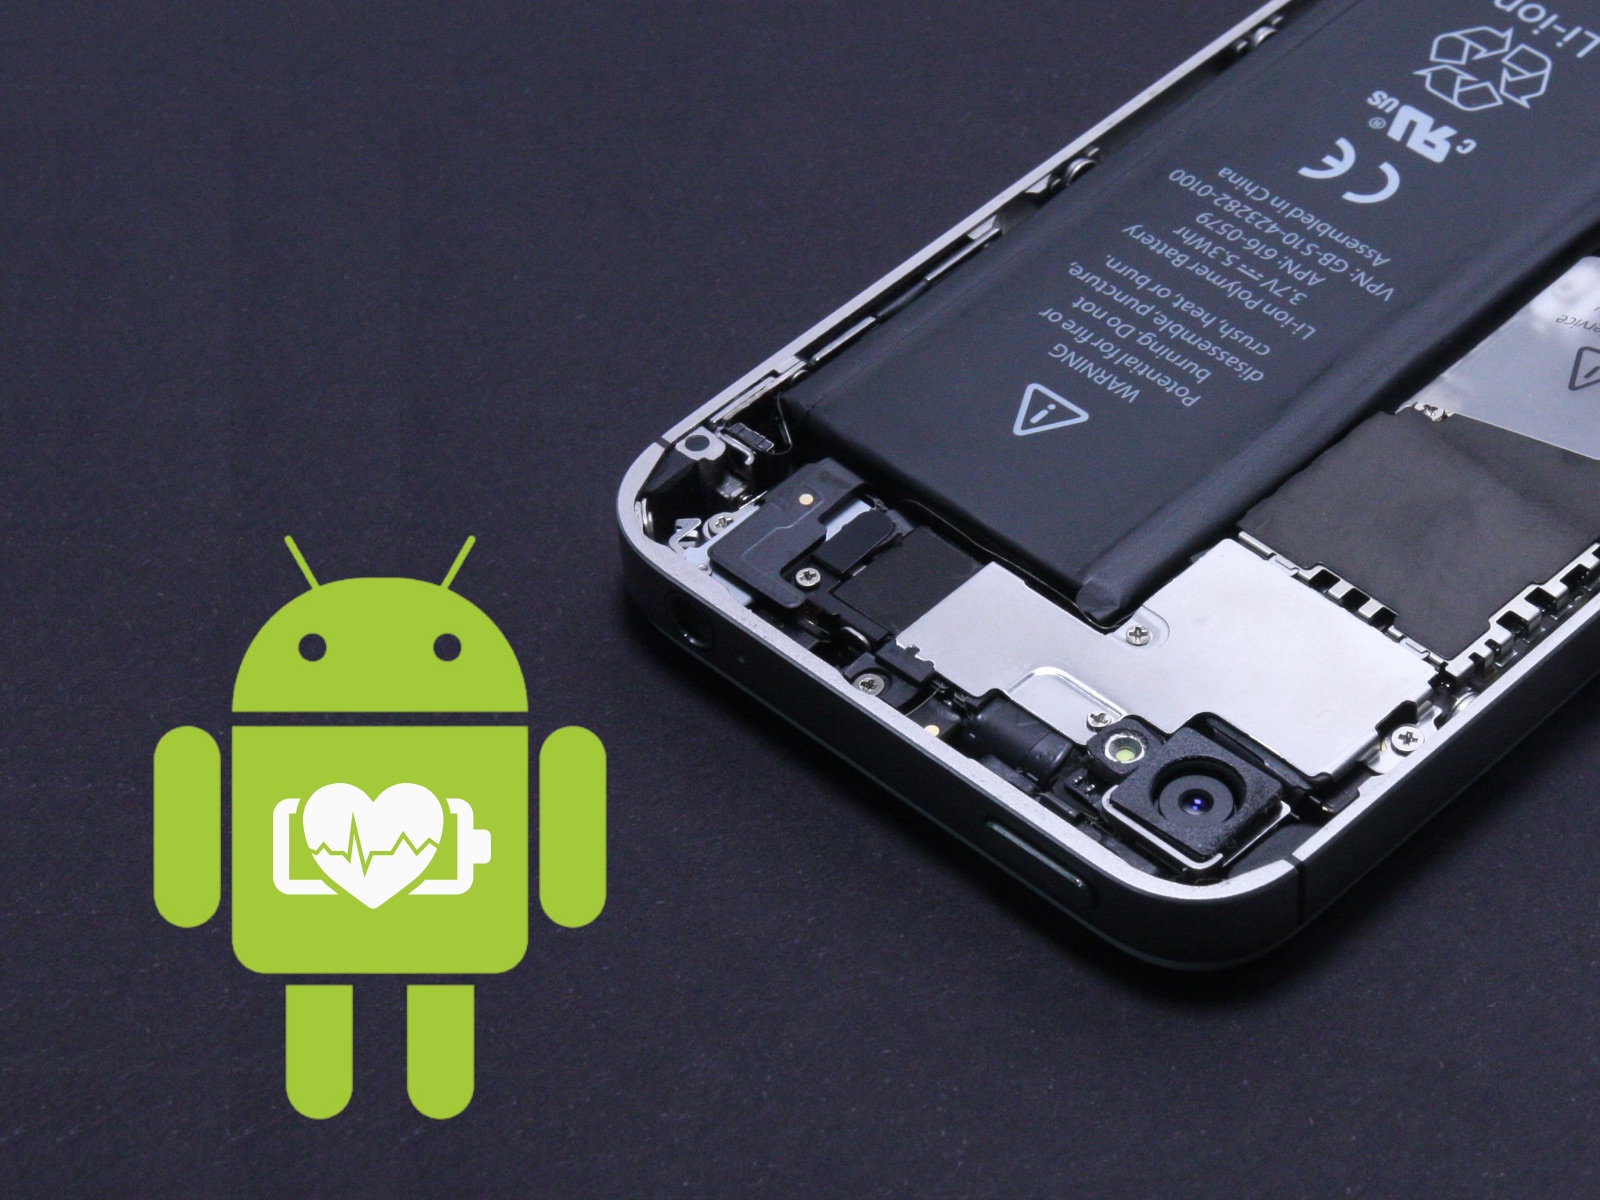 Il monitoraggio dello stato della batteria dovrebbe essere presto disponibile sui telefoni Android grazie alla pagina nascosta in Android 14 Beta